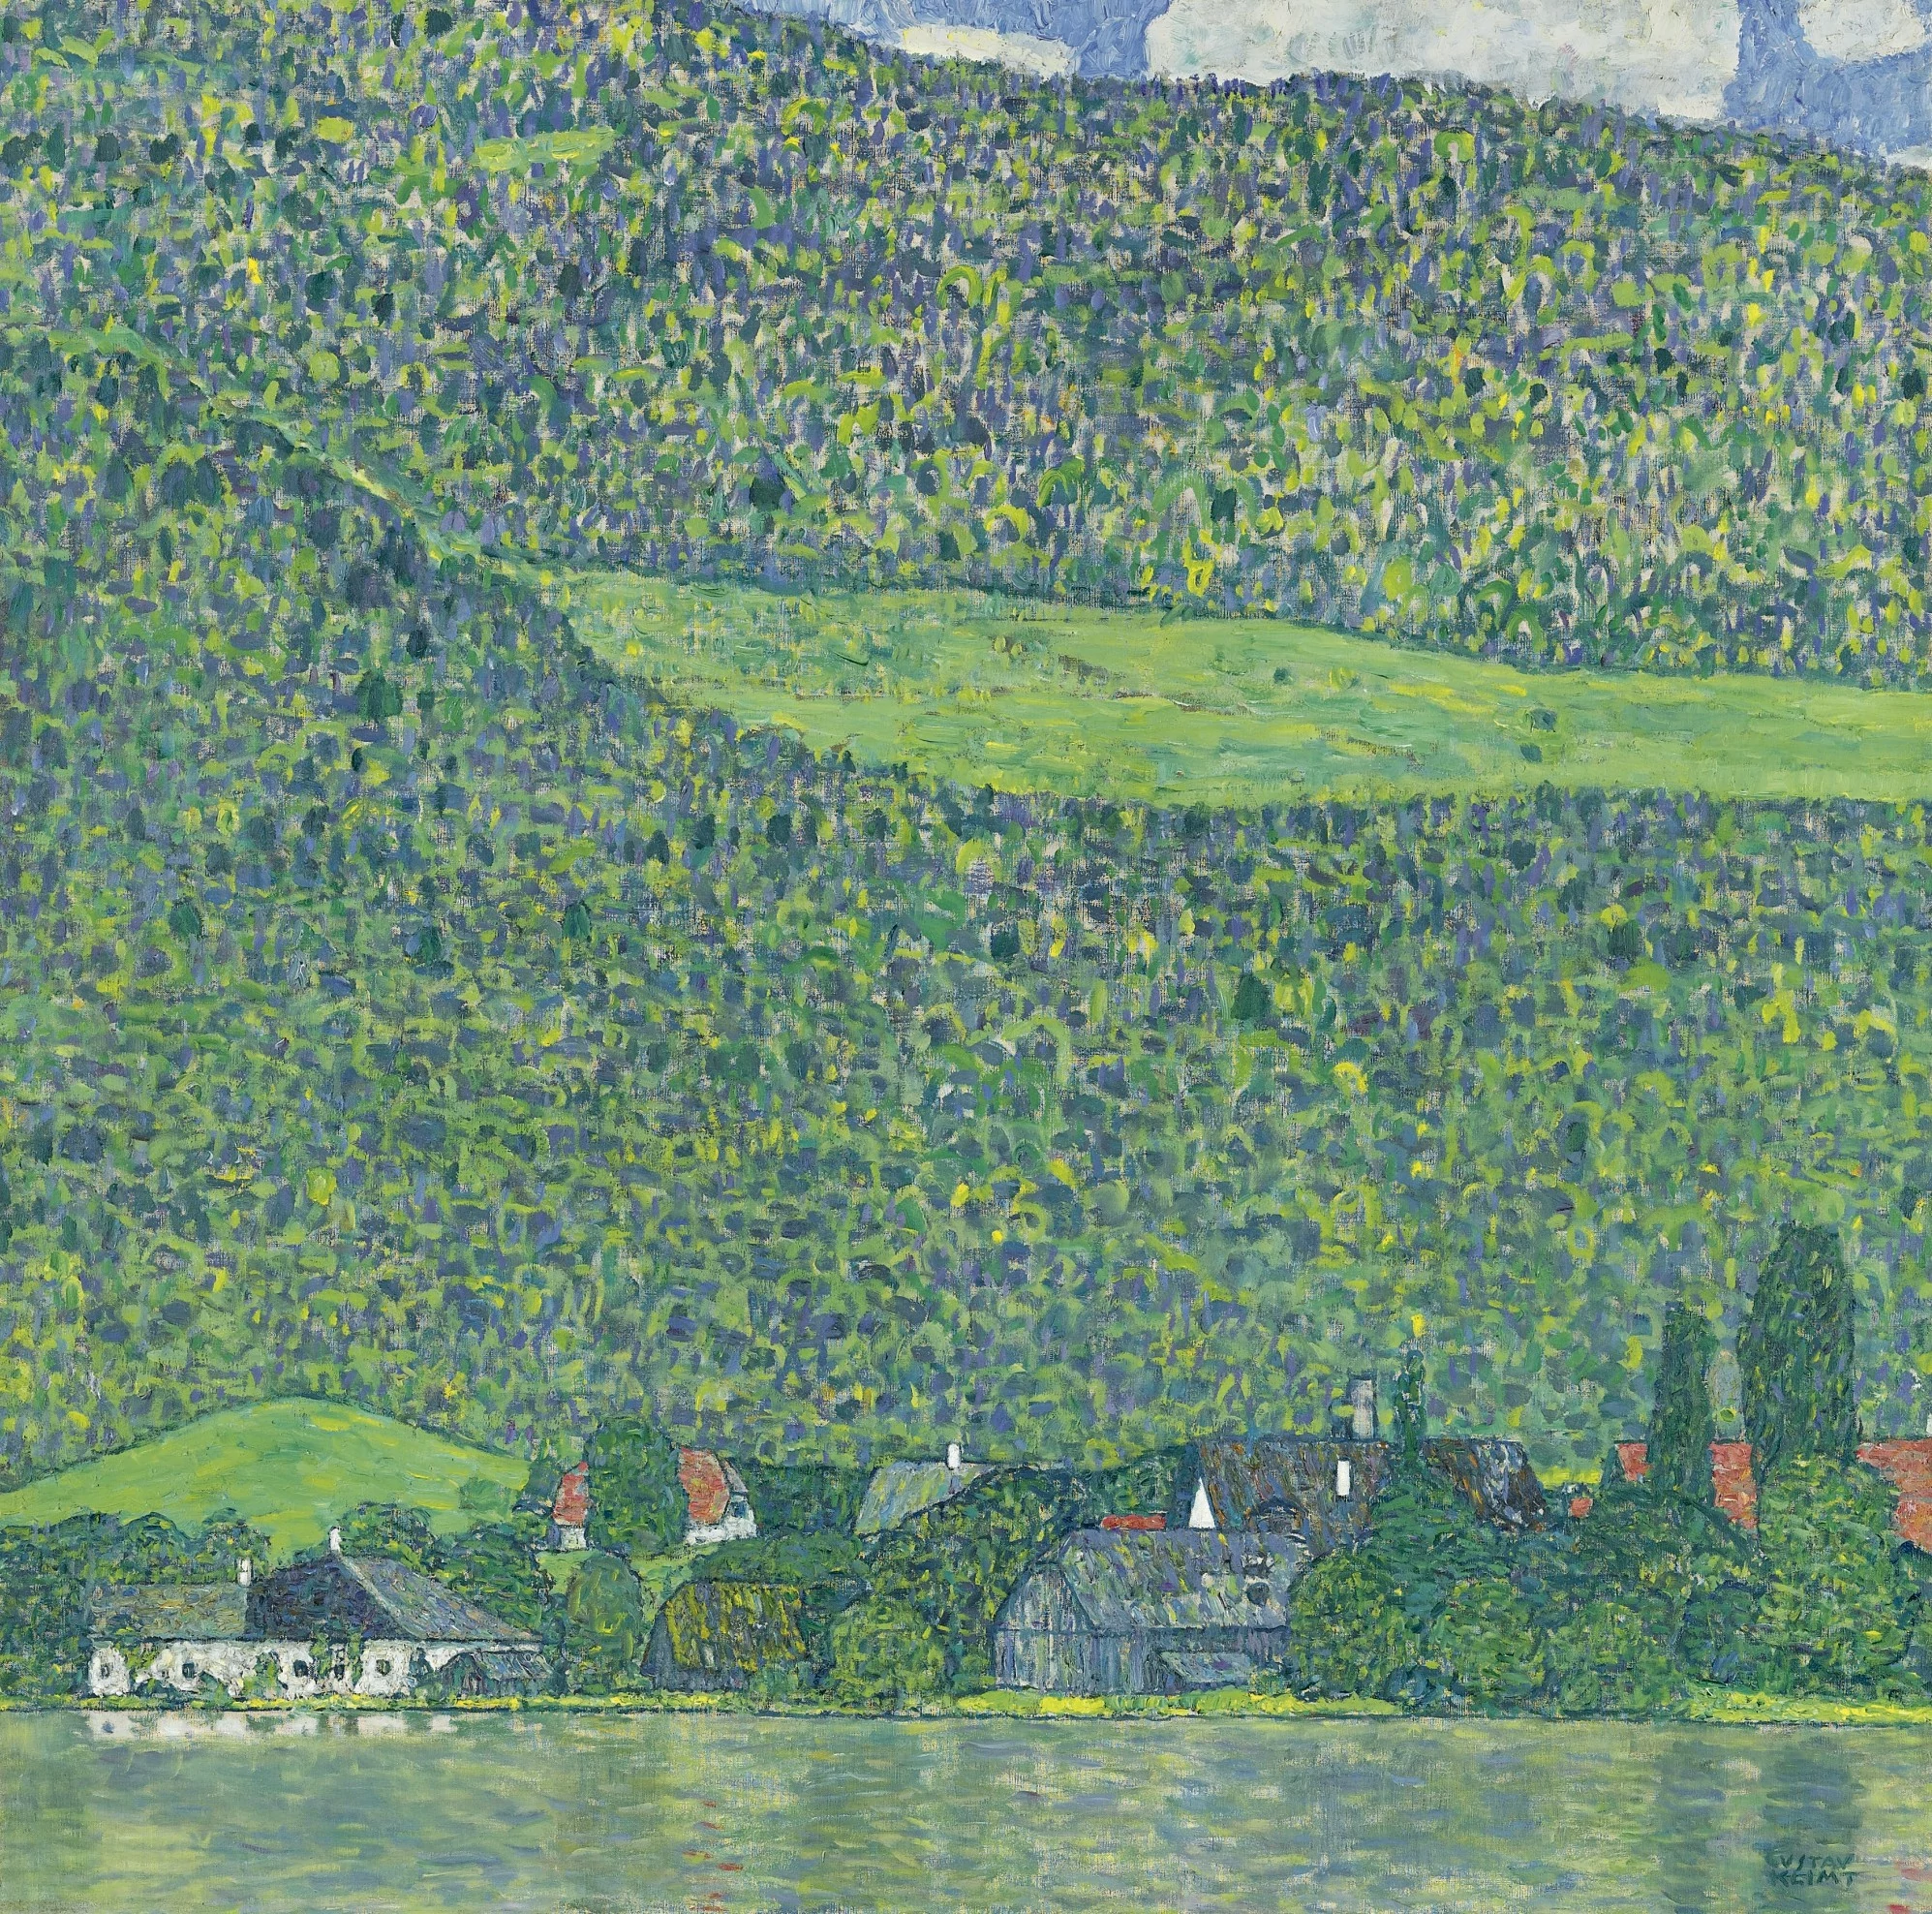 Litzlberg on the Attersee, Gustav Klimt